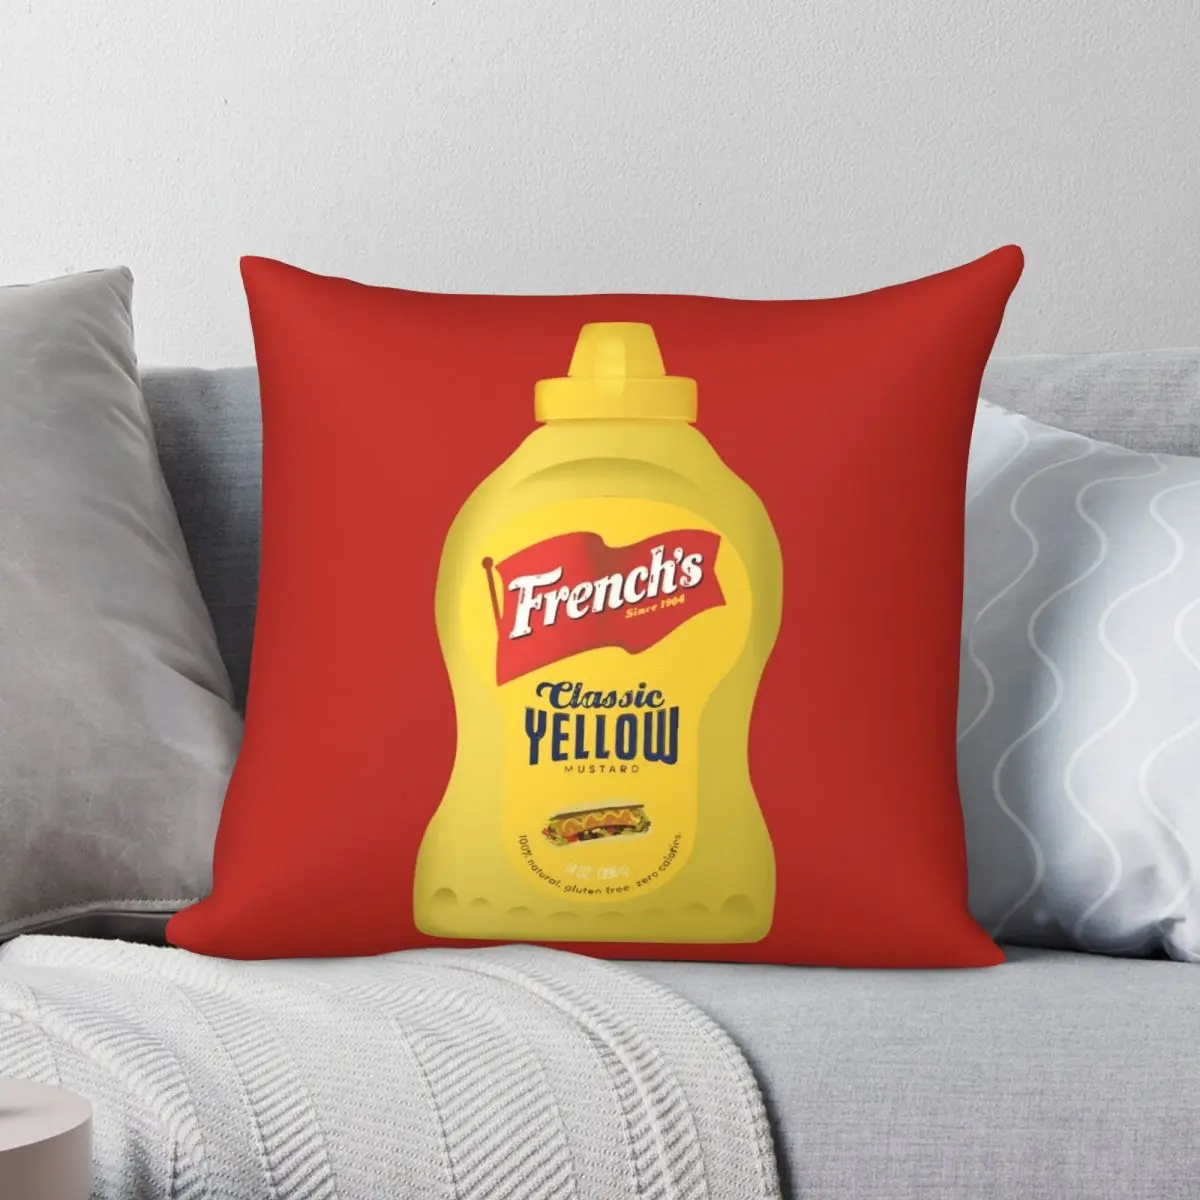 

Французский значок, классический желтый квадратный Чехол на подушку, чехол из полиэстера и льна, бархатный креативный декоративный чехол на застежке-молнии, Чехол на подушку для дивана и сидения